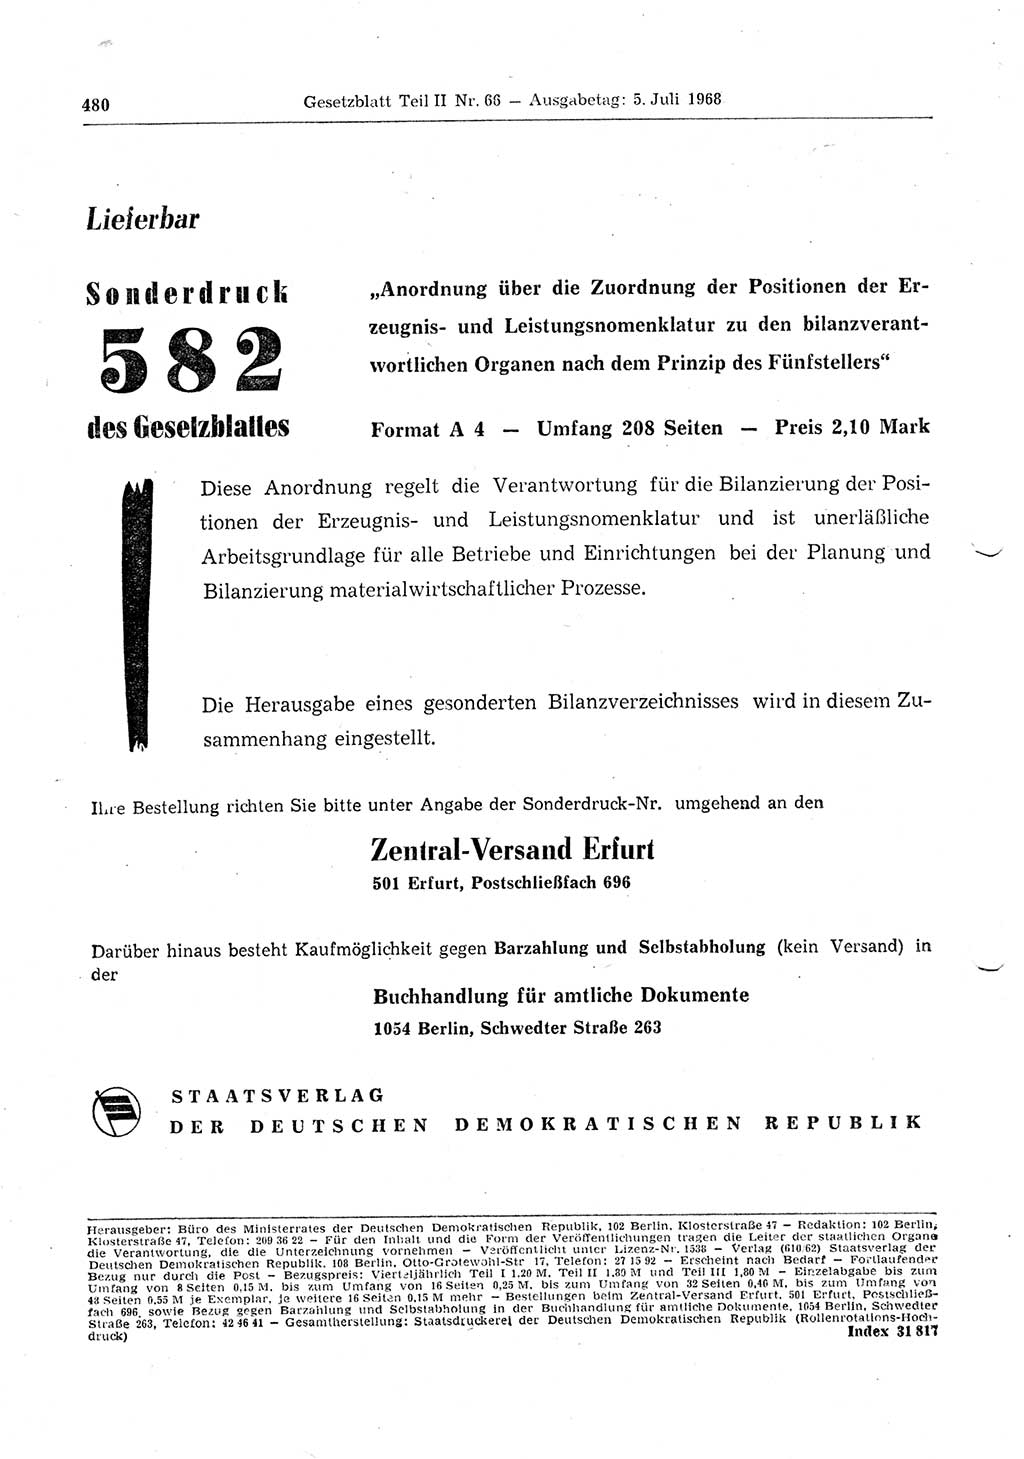 Gesetzblatt (GBl.) der Deutschen Demokratischen Republik (DDR) Teil ⅠⅠ 1968, Seite 480 (GBl. DDR ⅠⅠ 1968, S. 480)